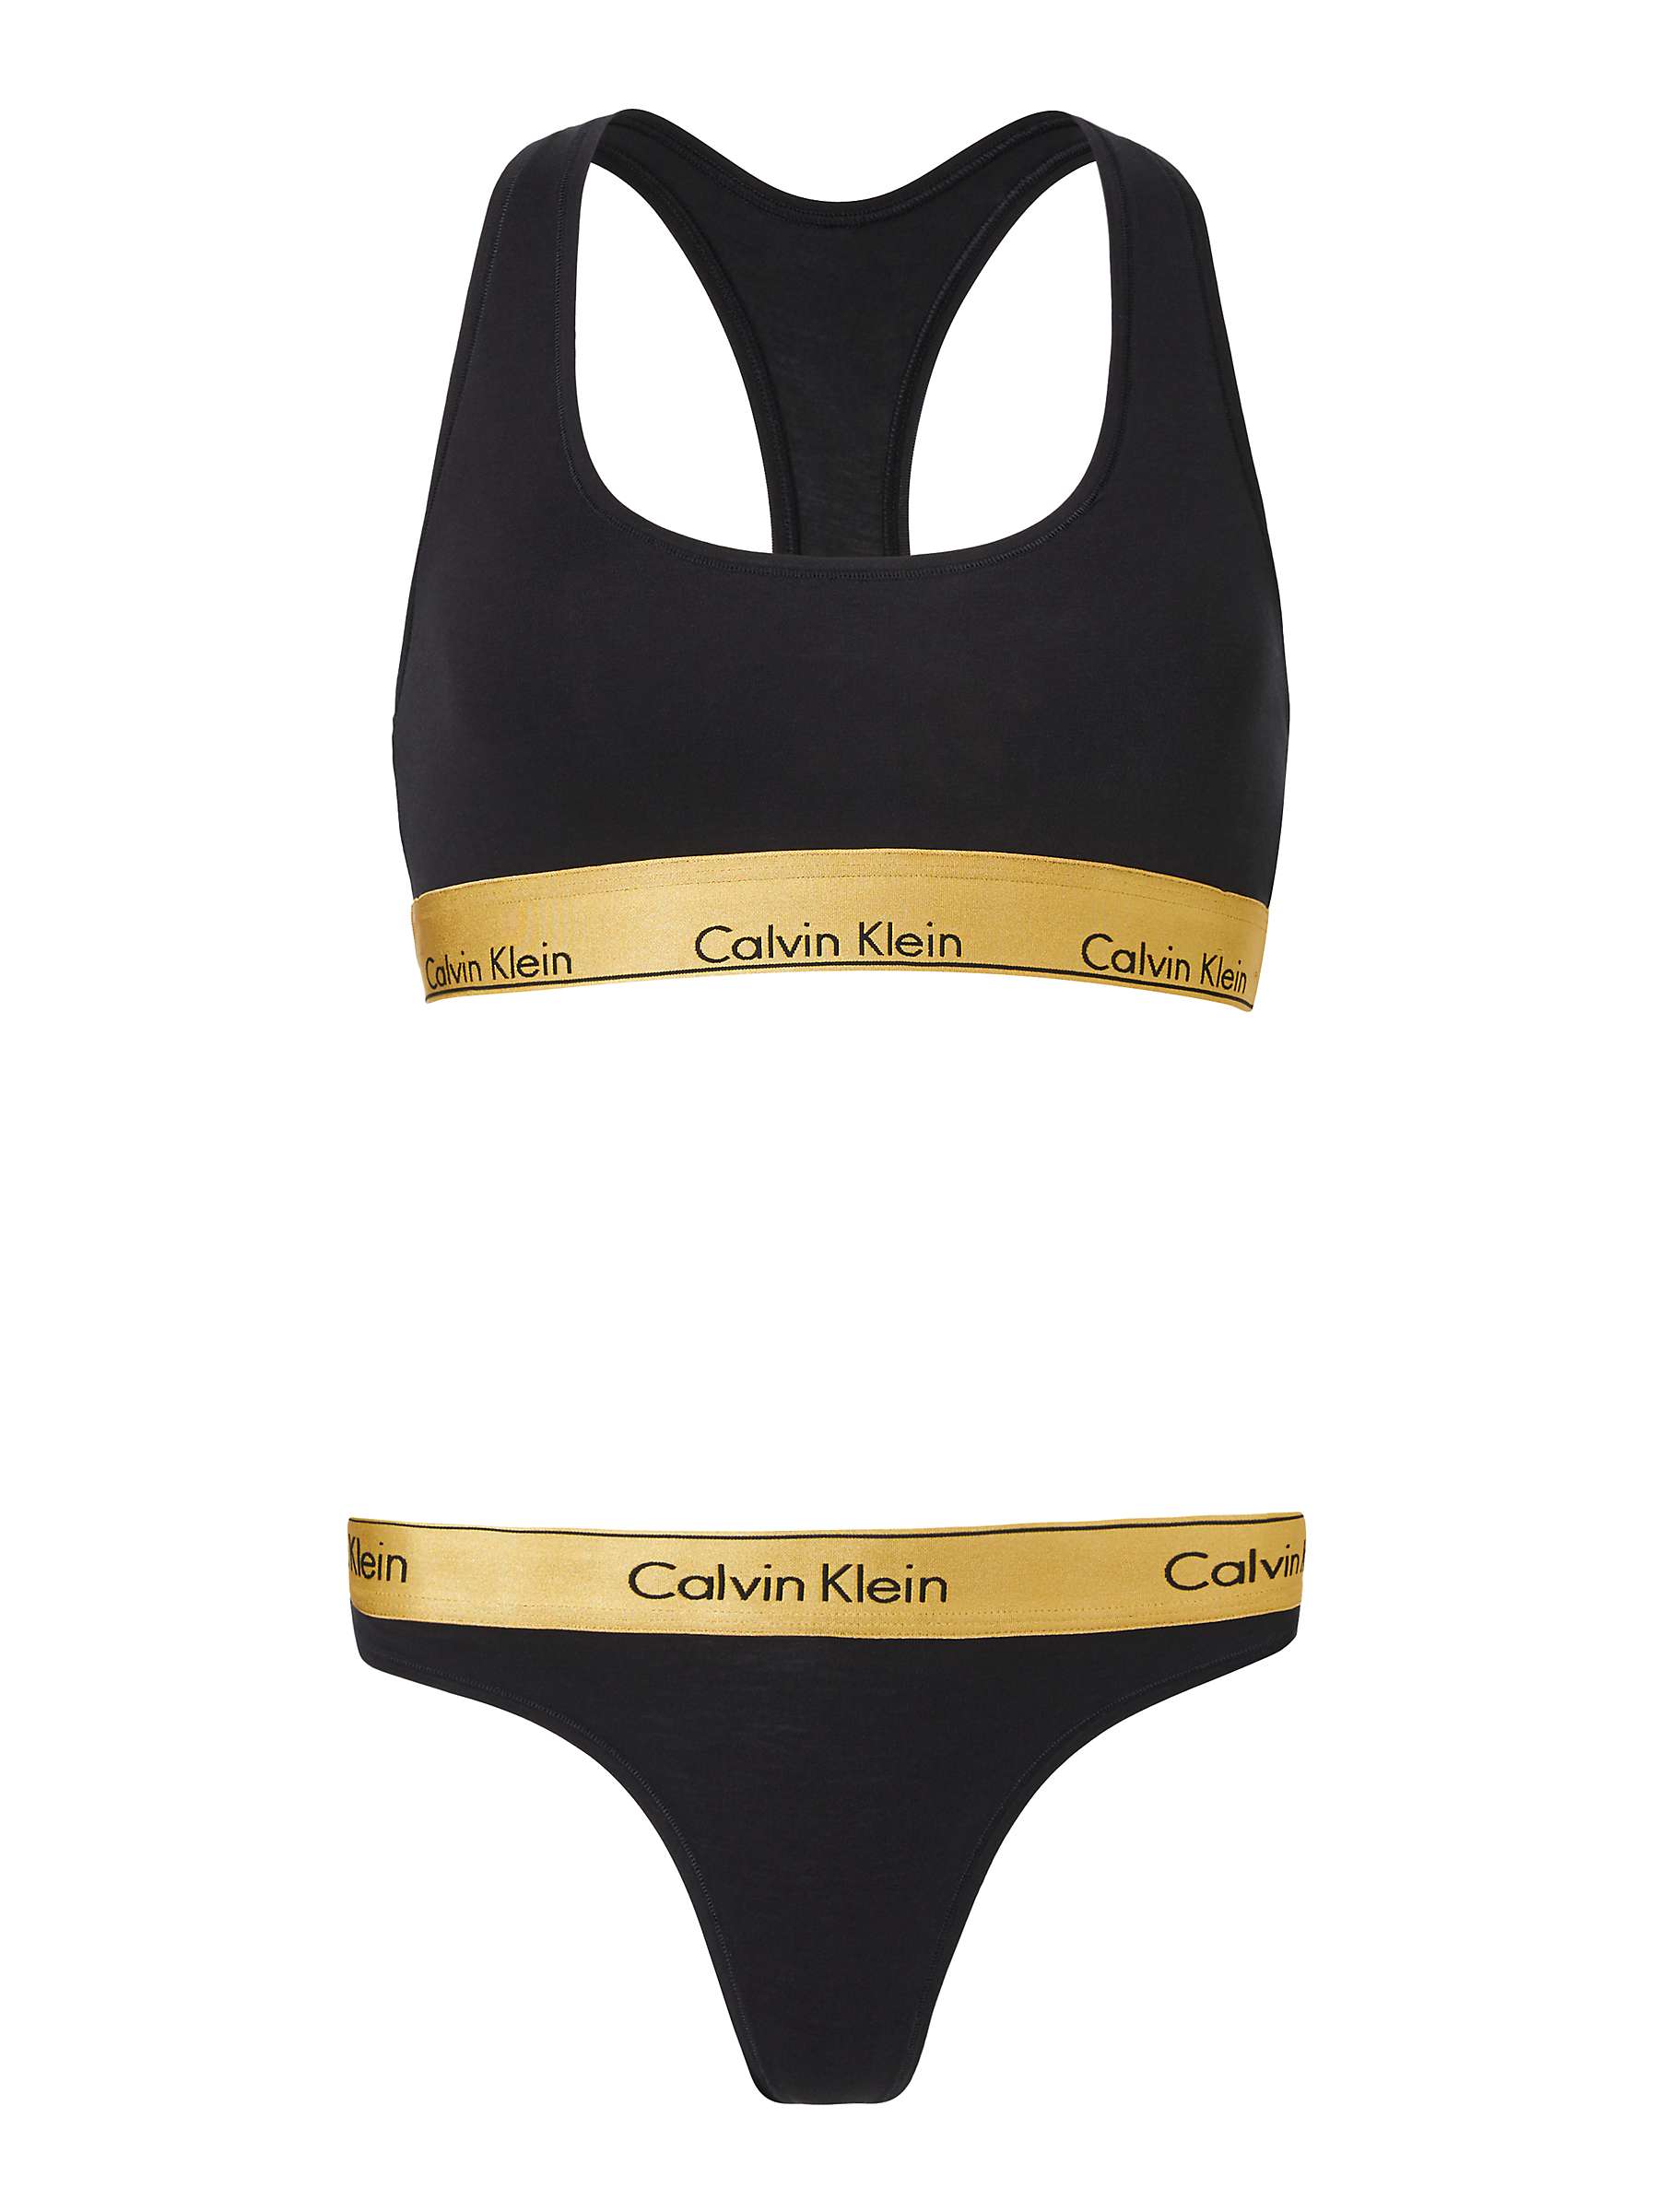 Calvin Klein Underwear Modern Cotton Bralette & Thong Set, Black/Gold ...